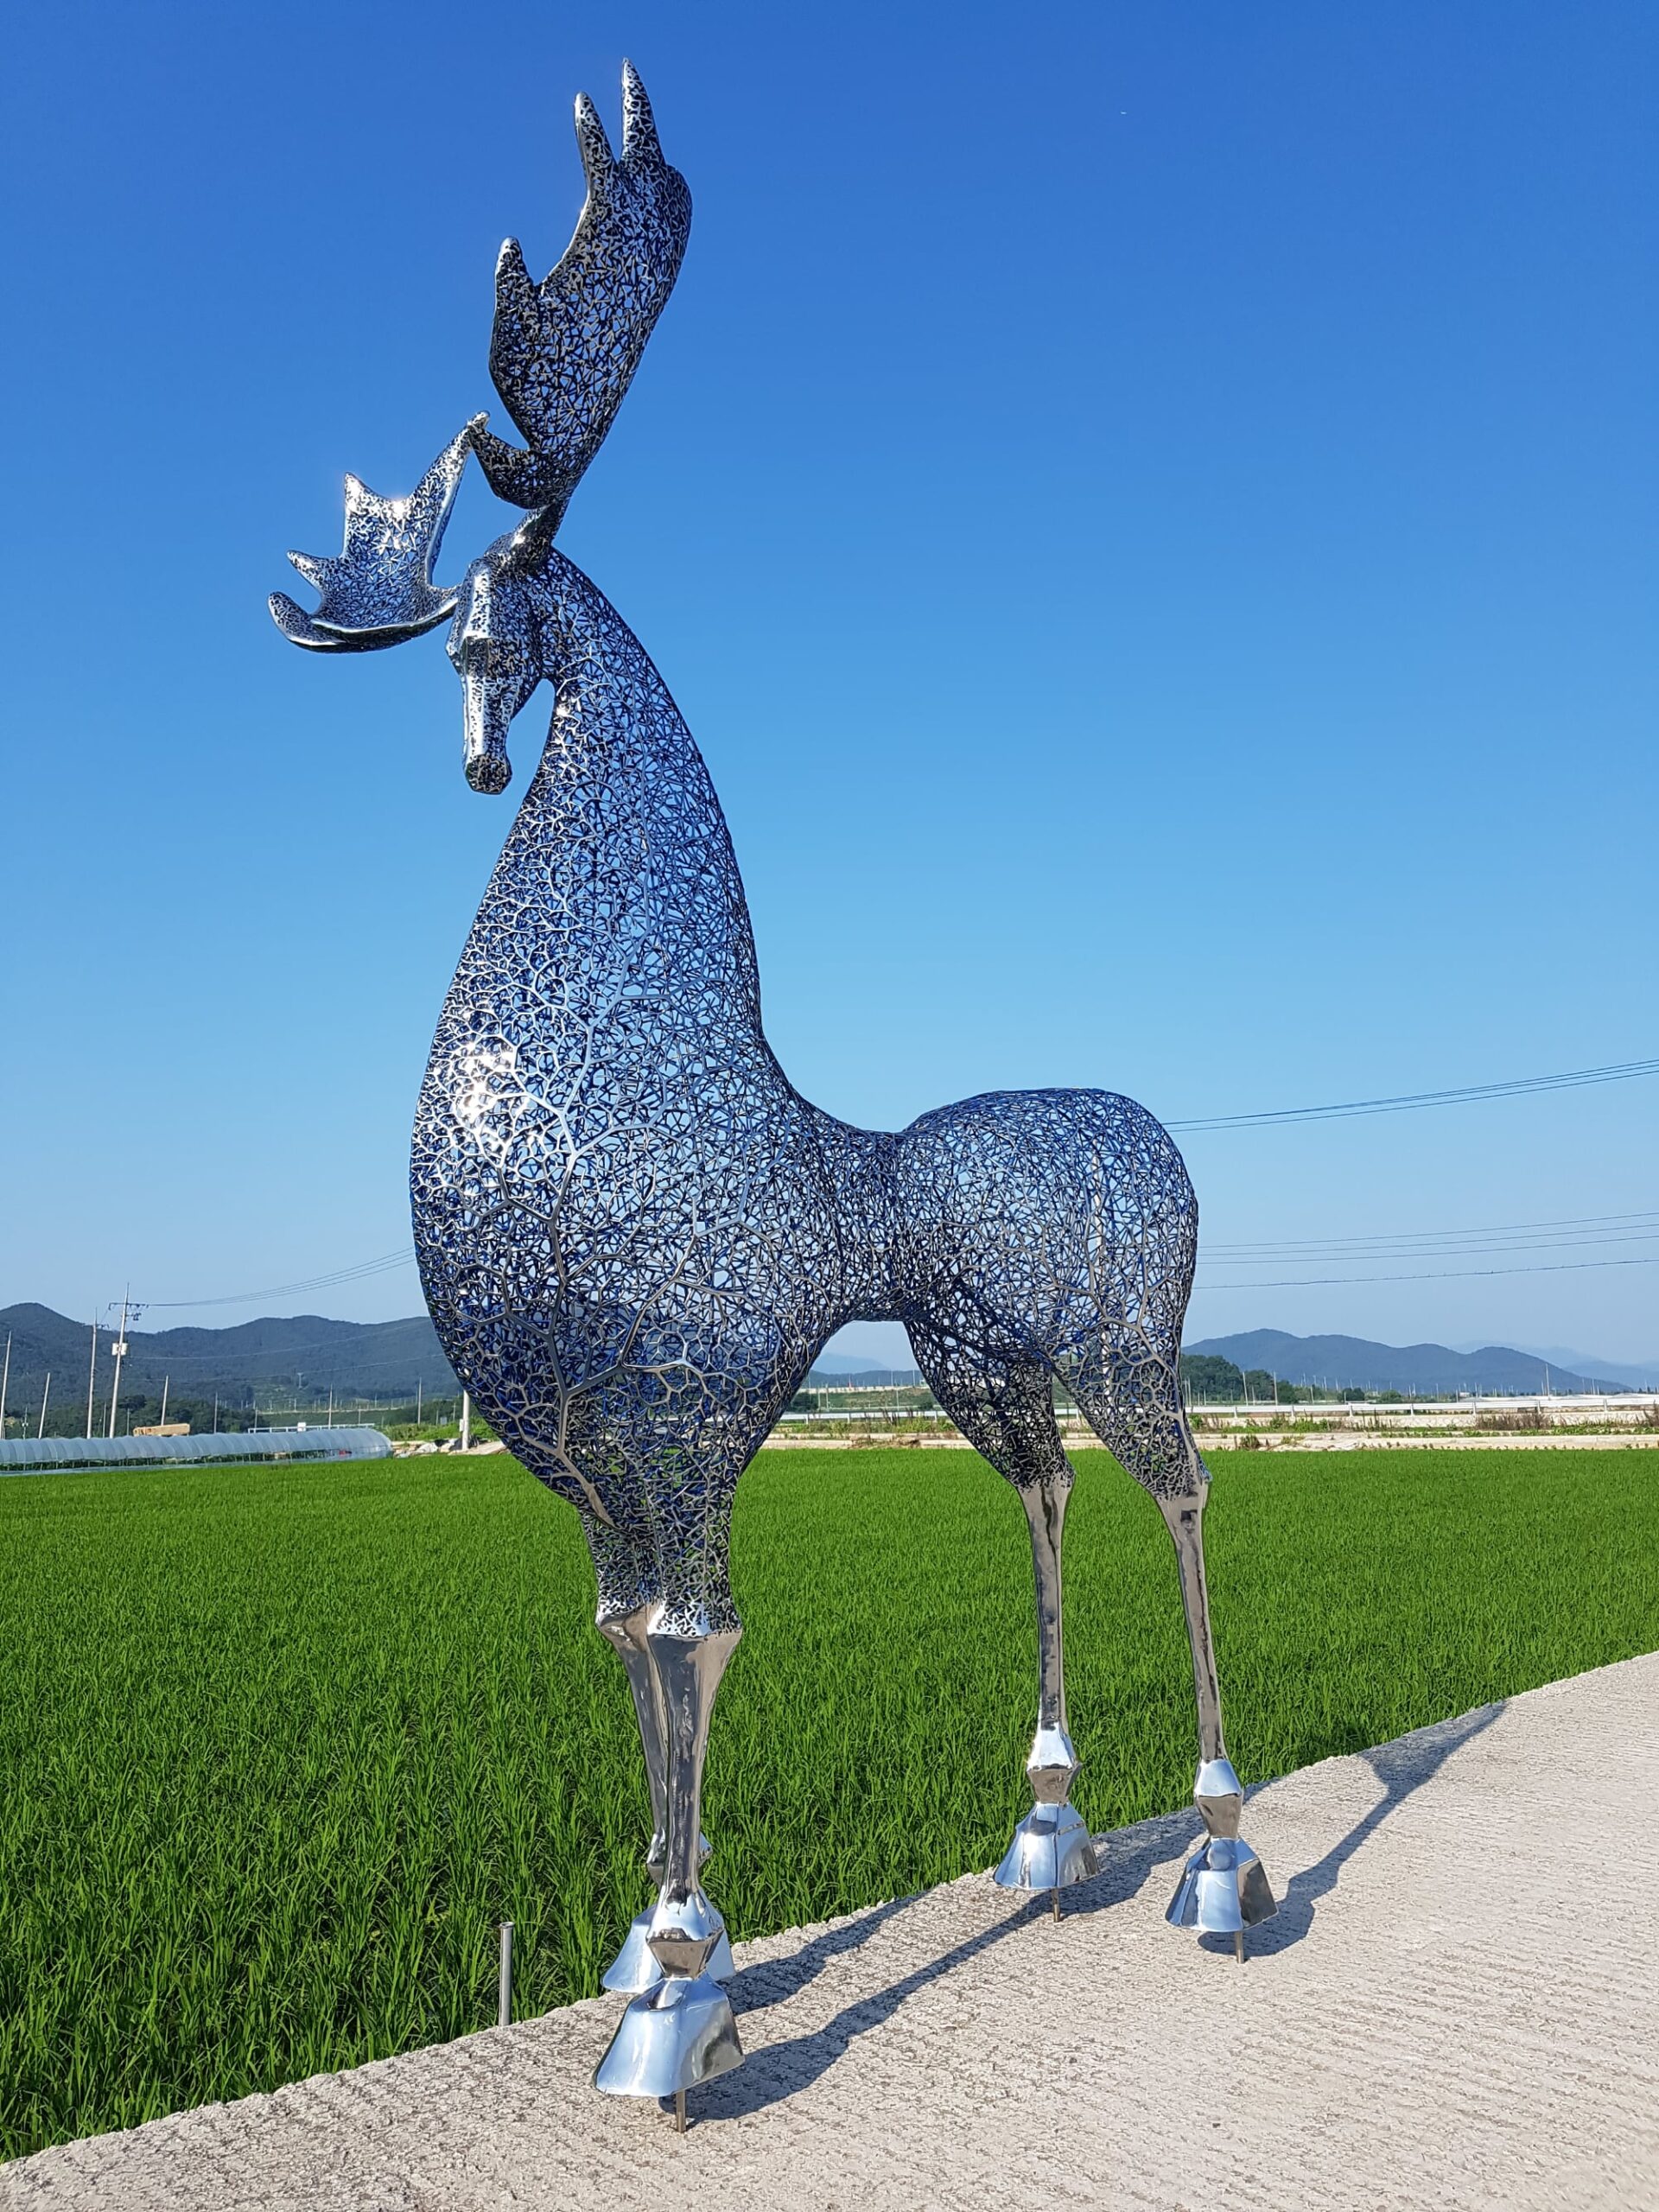 Complexe netwerken van metalen takken vormen dierensculpturen door Kang Dong Hyun